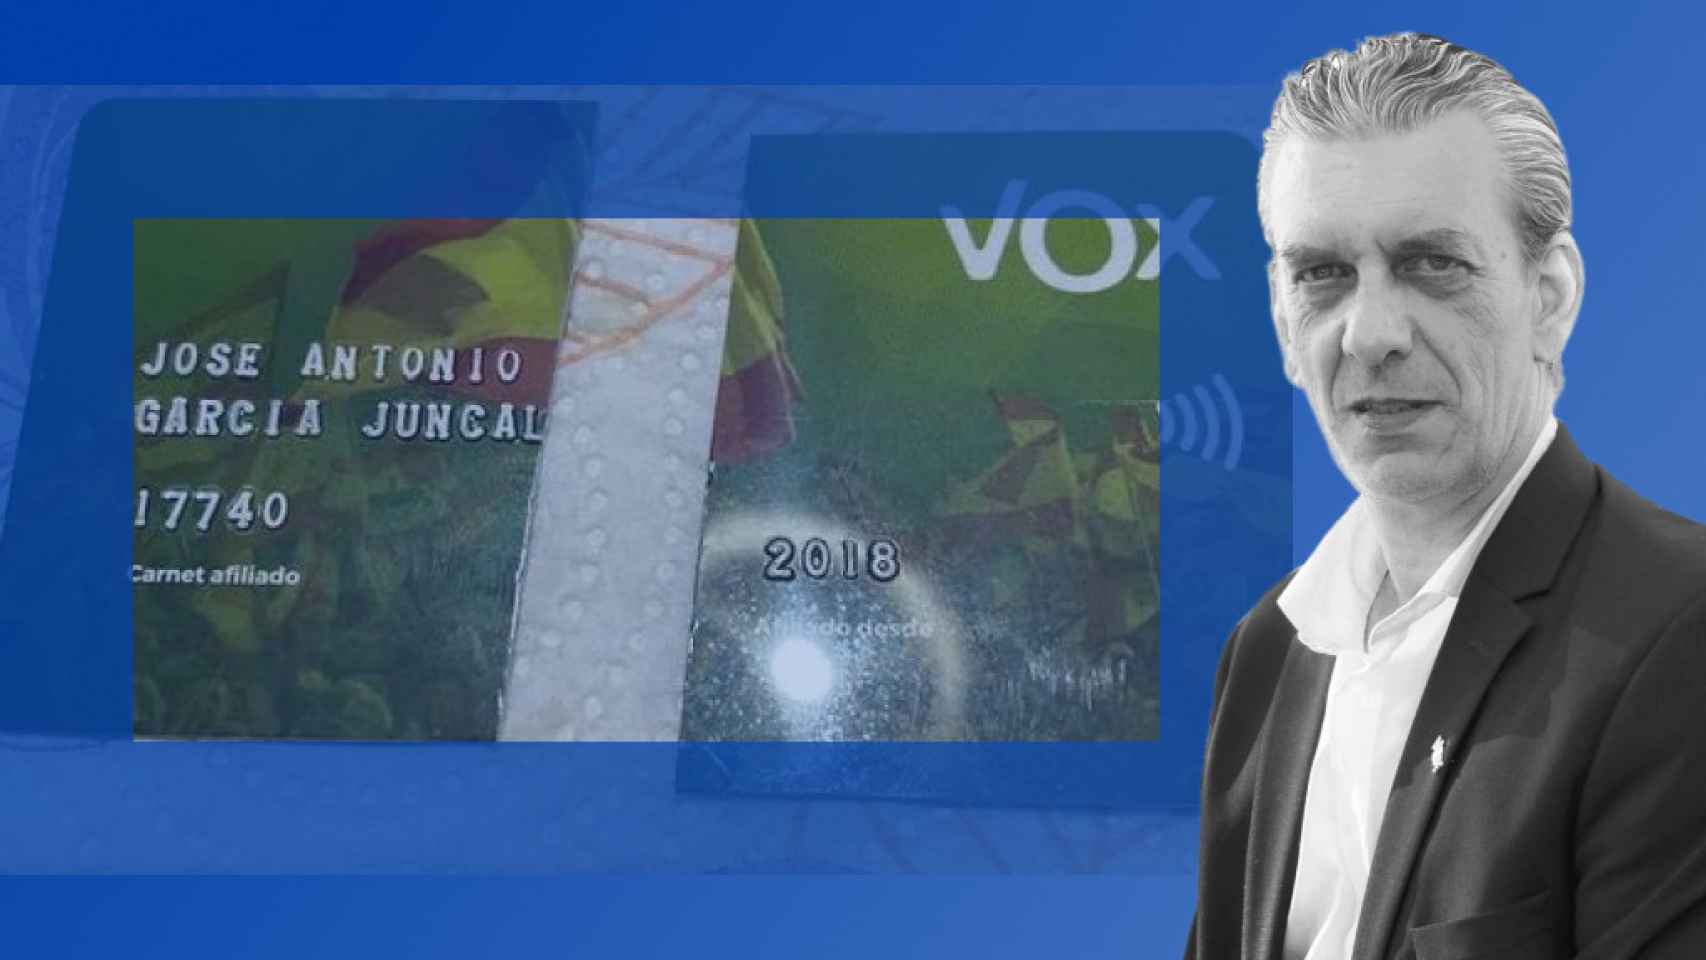 El carnet del partido roto con el que Jose Antonio, en la imagen, anuncia su salida de Vox.